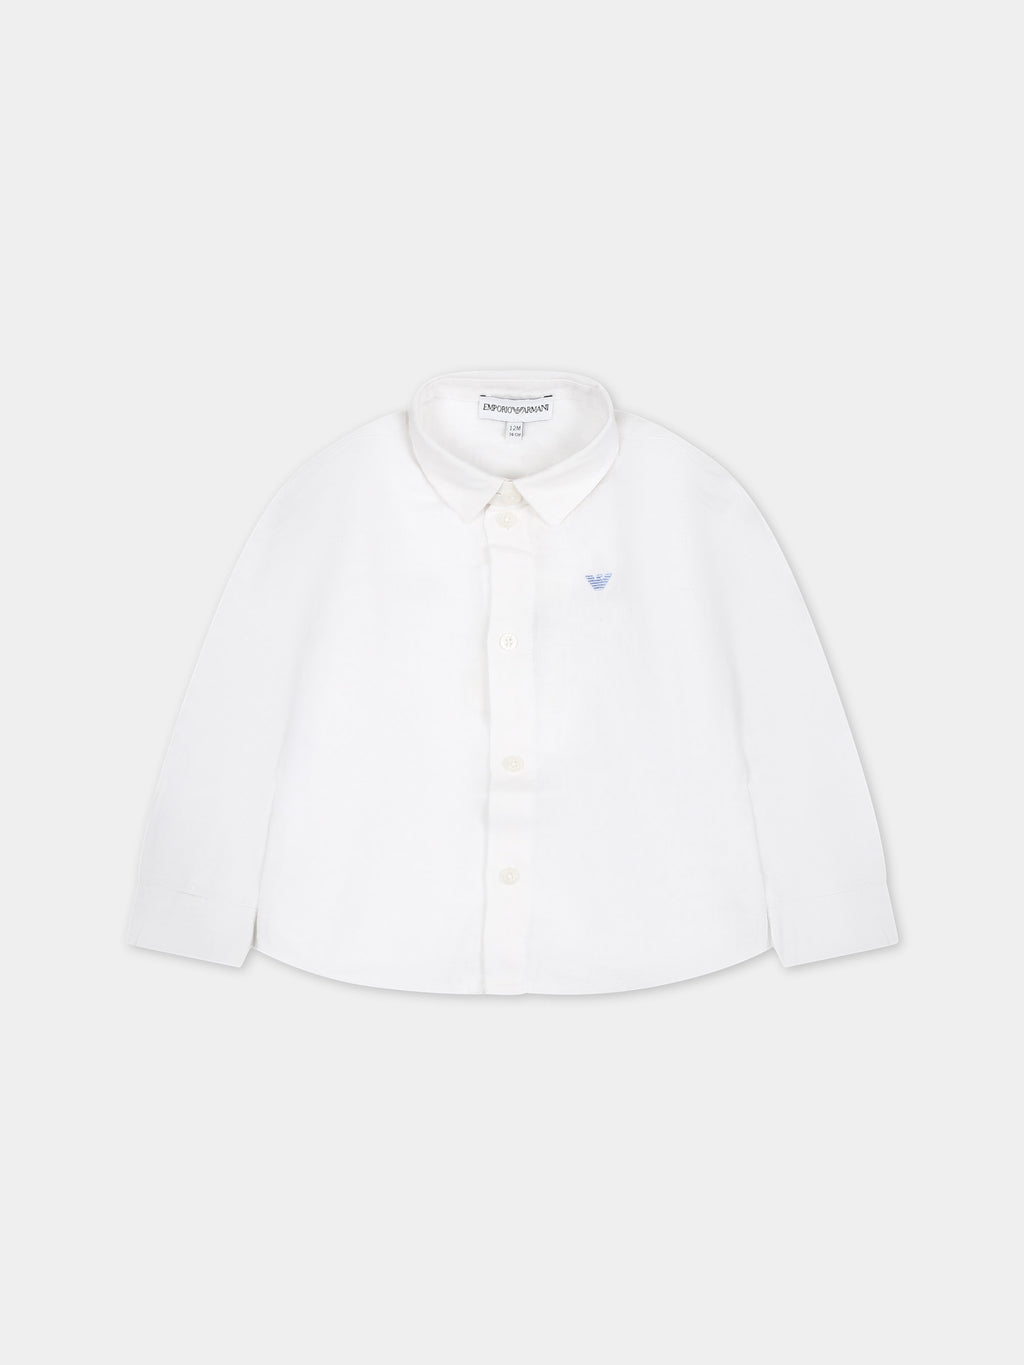 Chemise blanche pour bébé garçon avec un aiglon emblématique